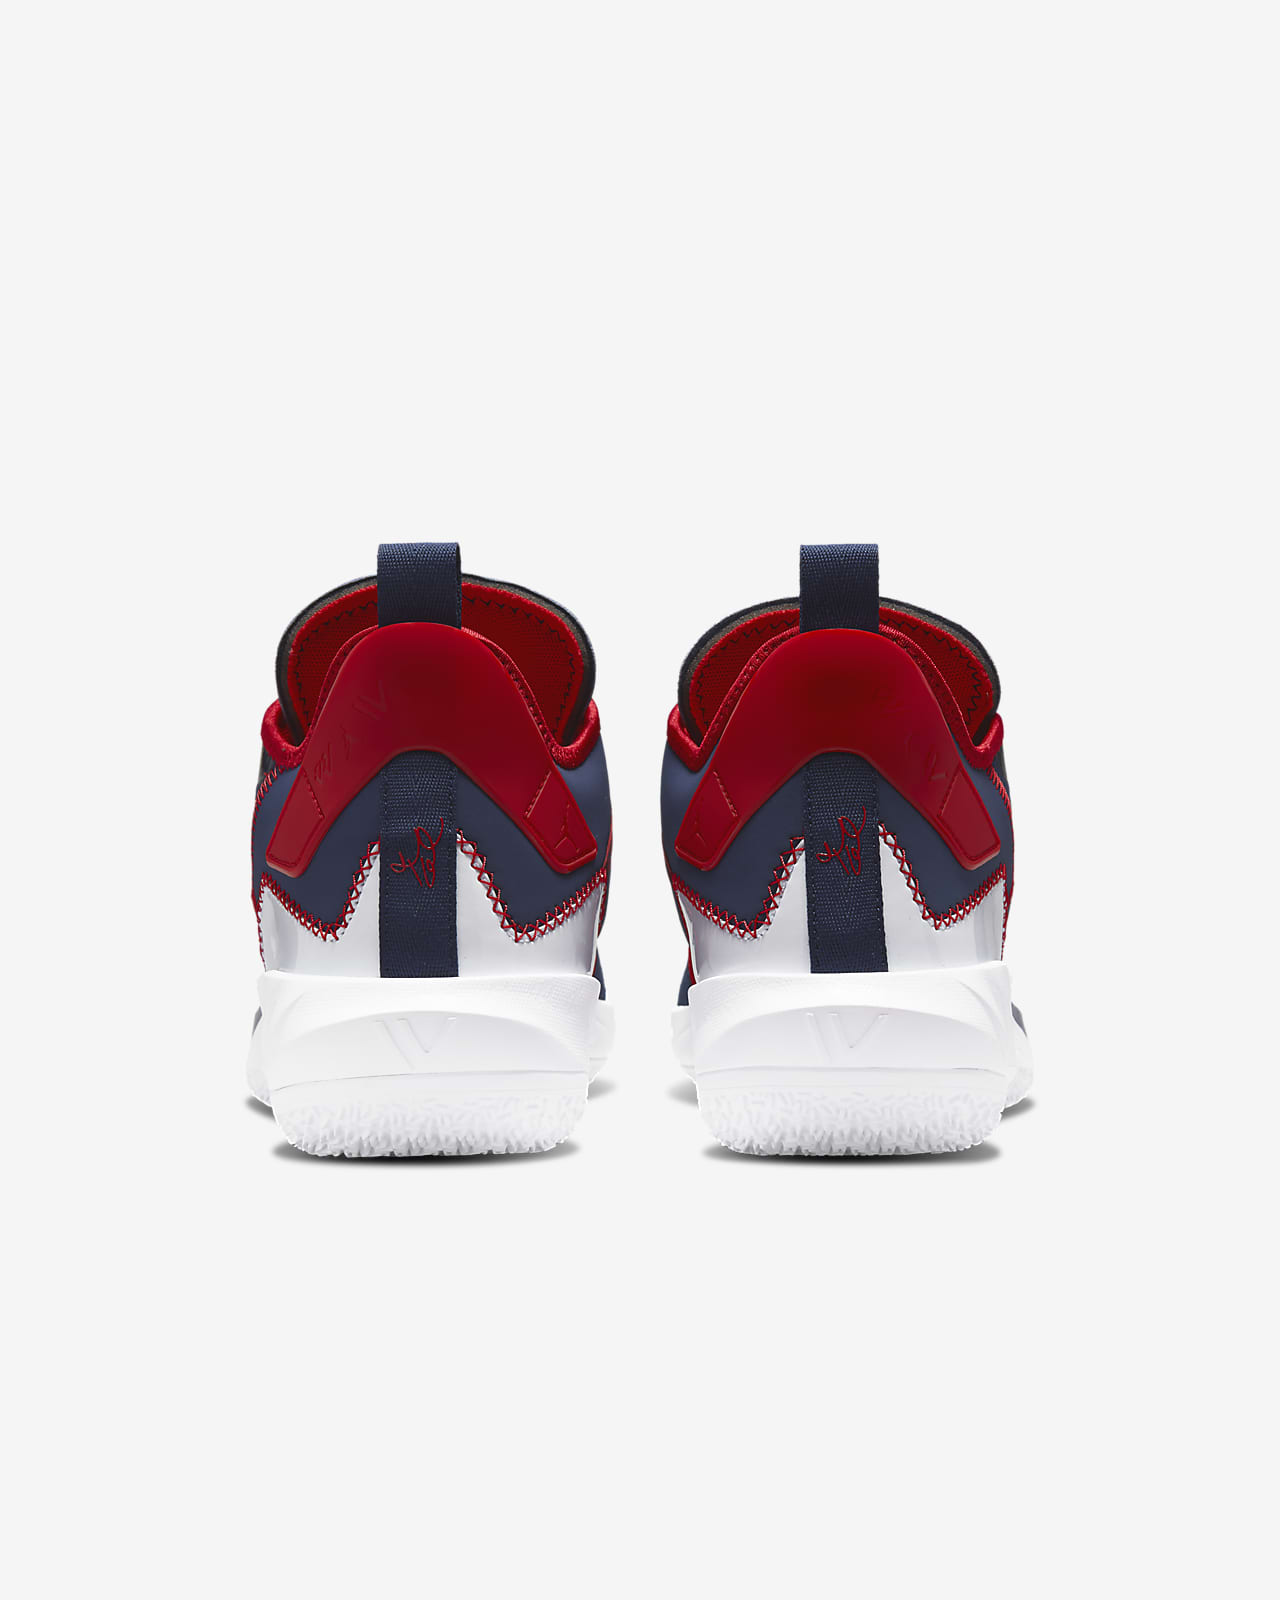 Posicionar propietario carga Jordan 'Why Not?' Zer0.4 Zapatillas de baloncesto. Nike ES